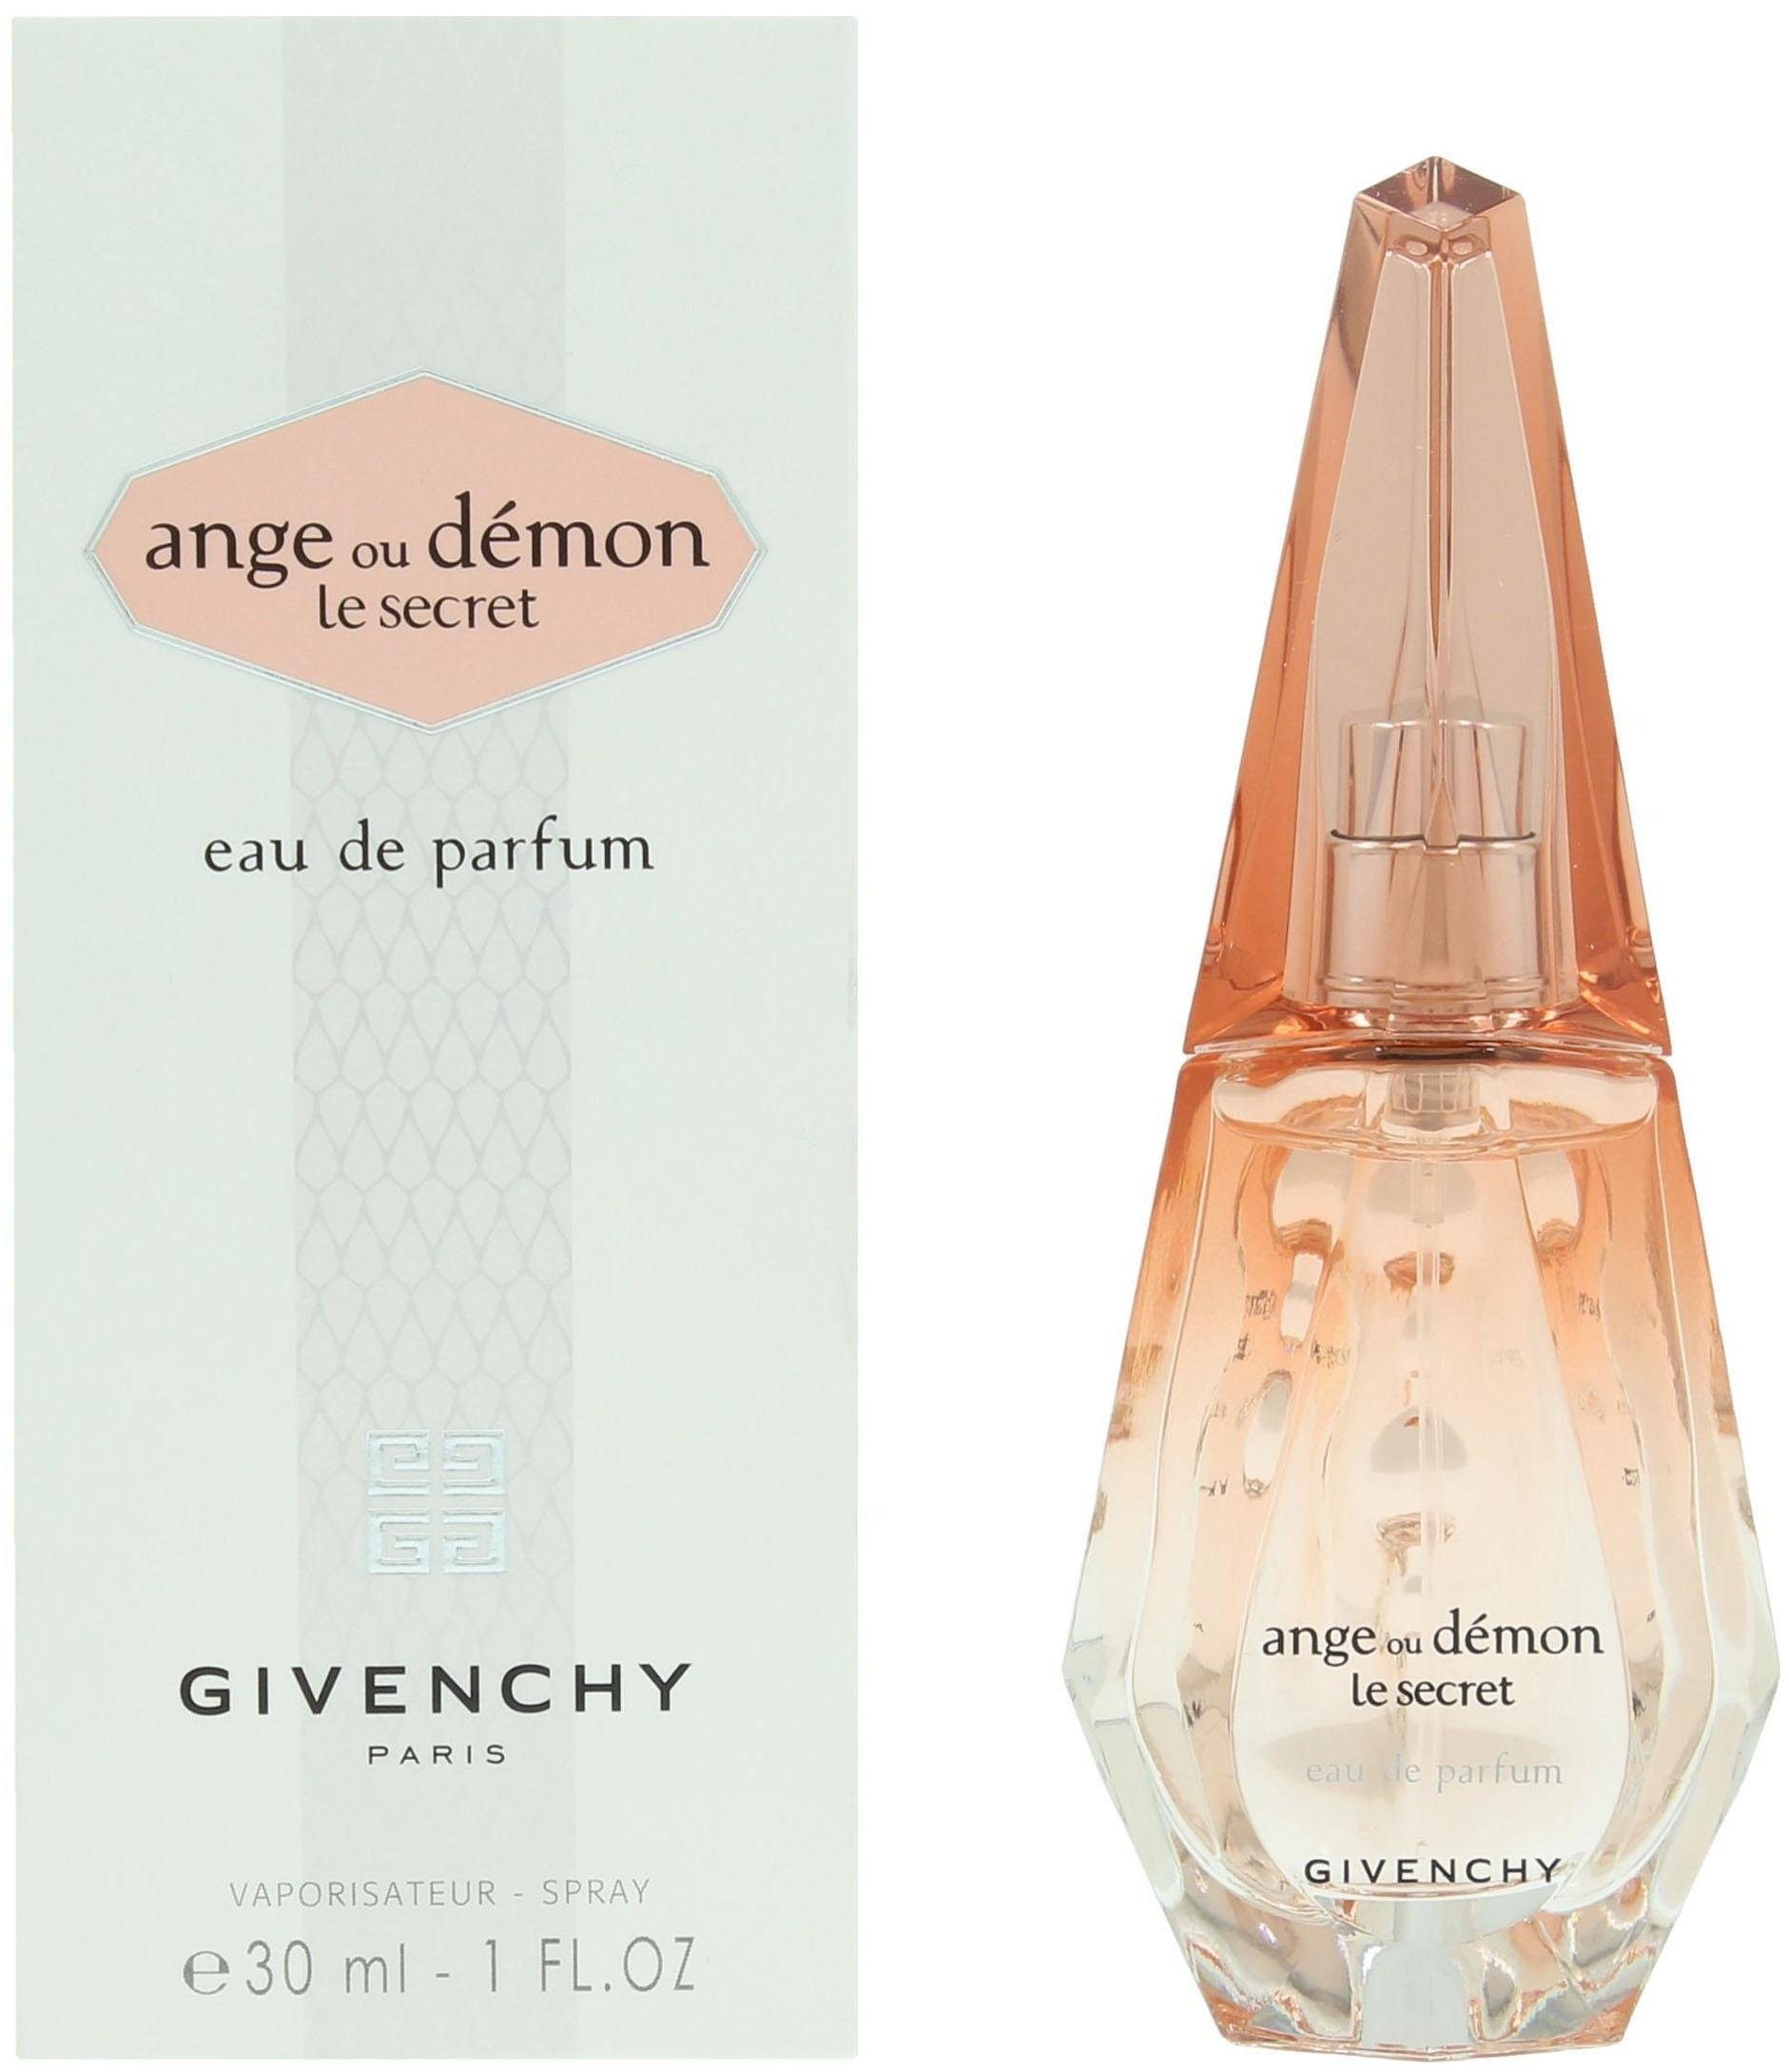 GIVENCHY Eau de Parfum Ange Le Demon Secret Ou